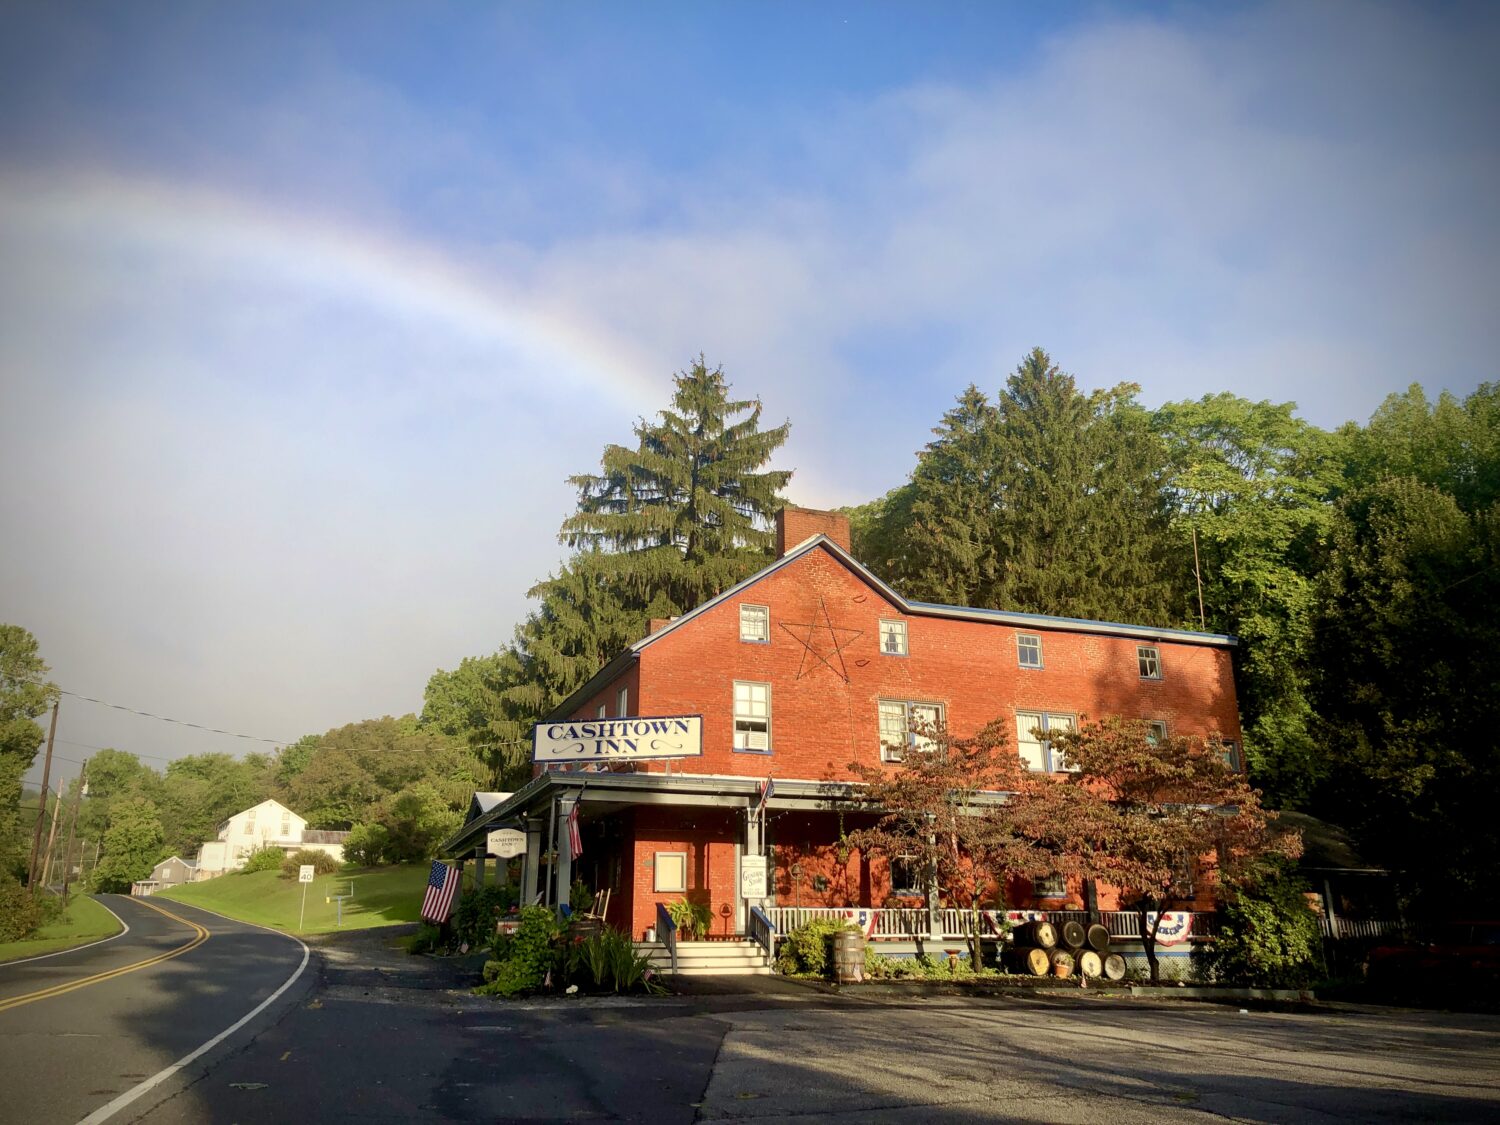 Cashtown Inn with Rainbow in blue sky